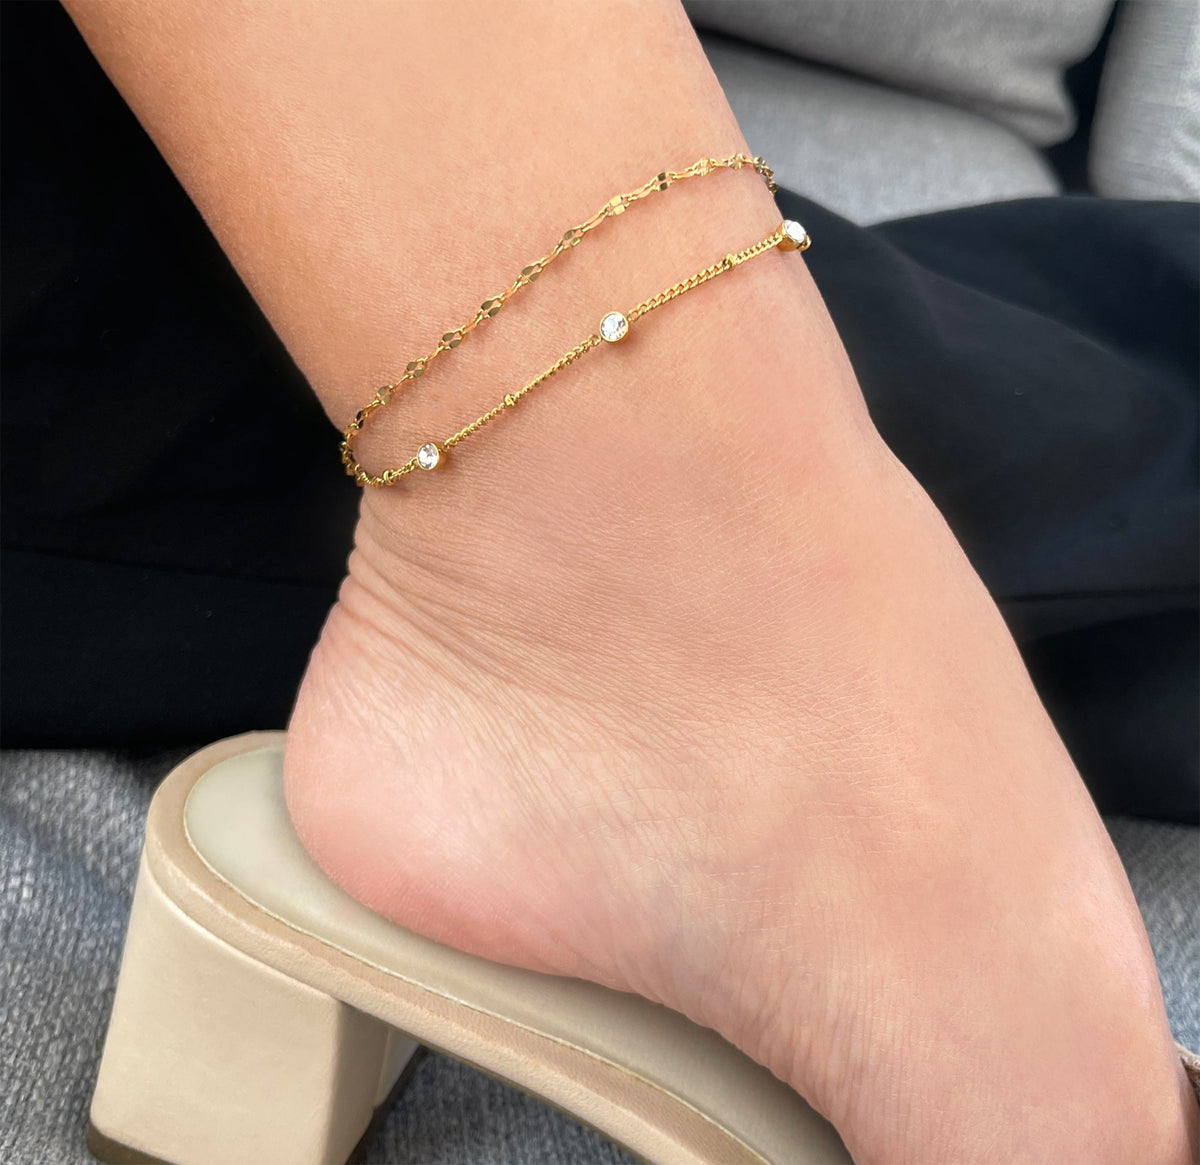 gold dainty anklet bracelet waterproof jewelry